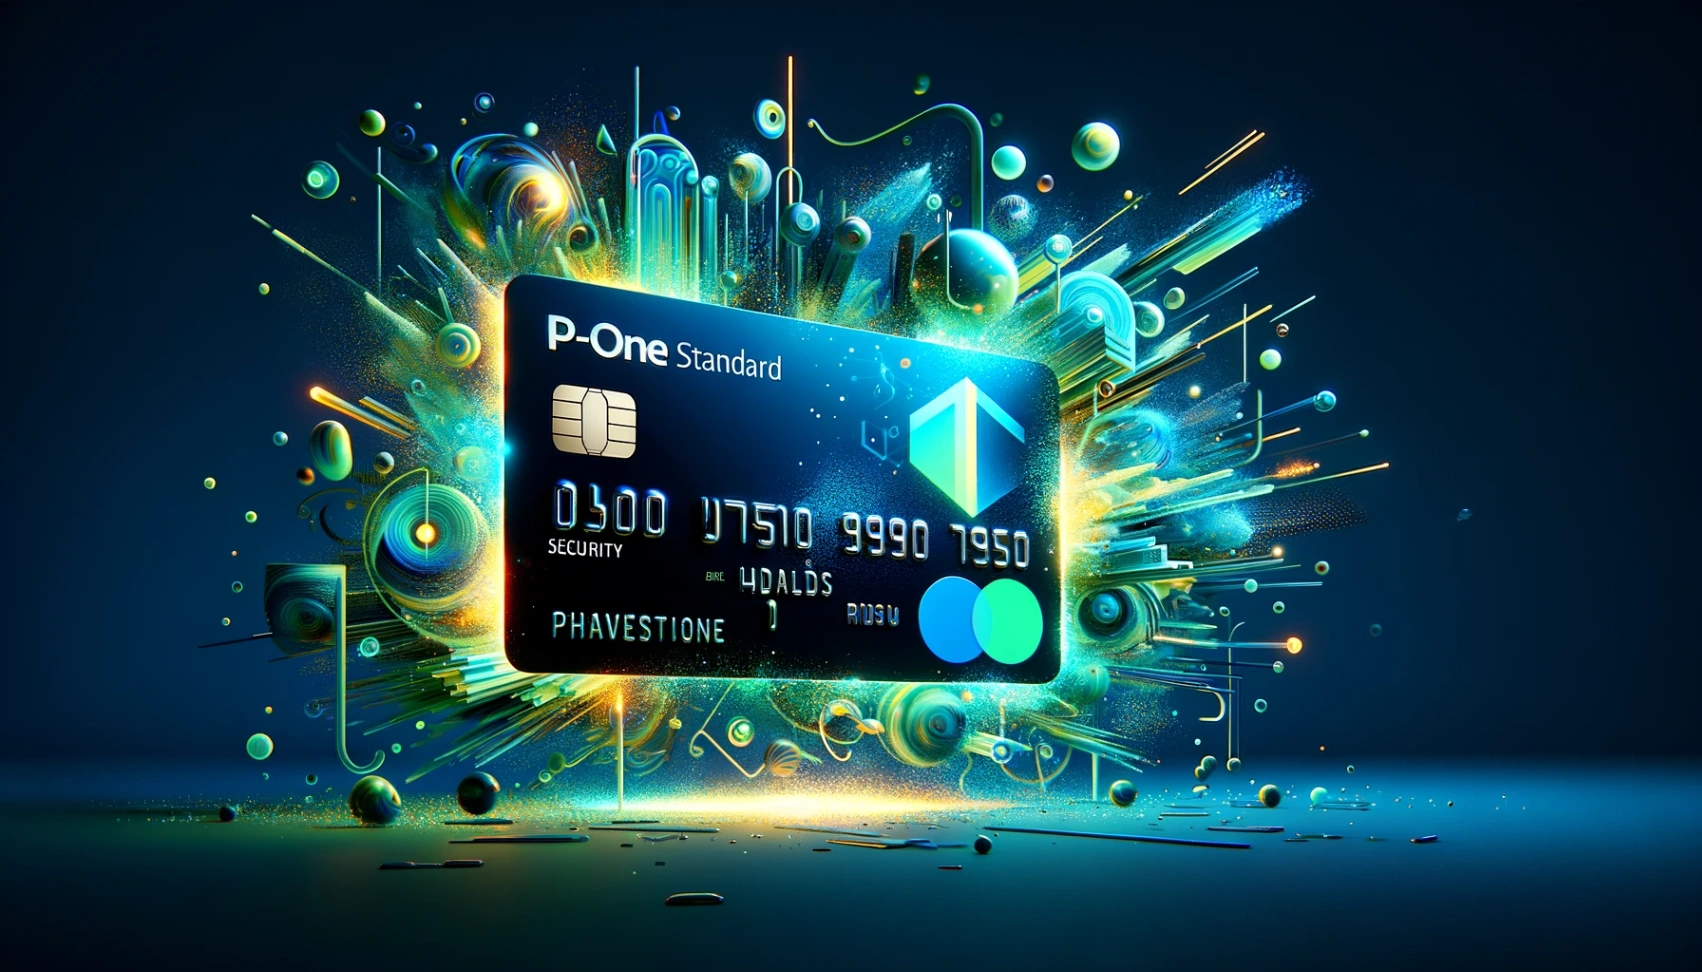 P-Oneスタンダードクレジットカードの注文ガイド